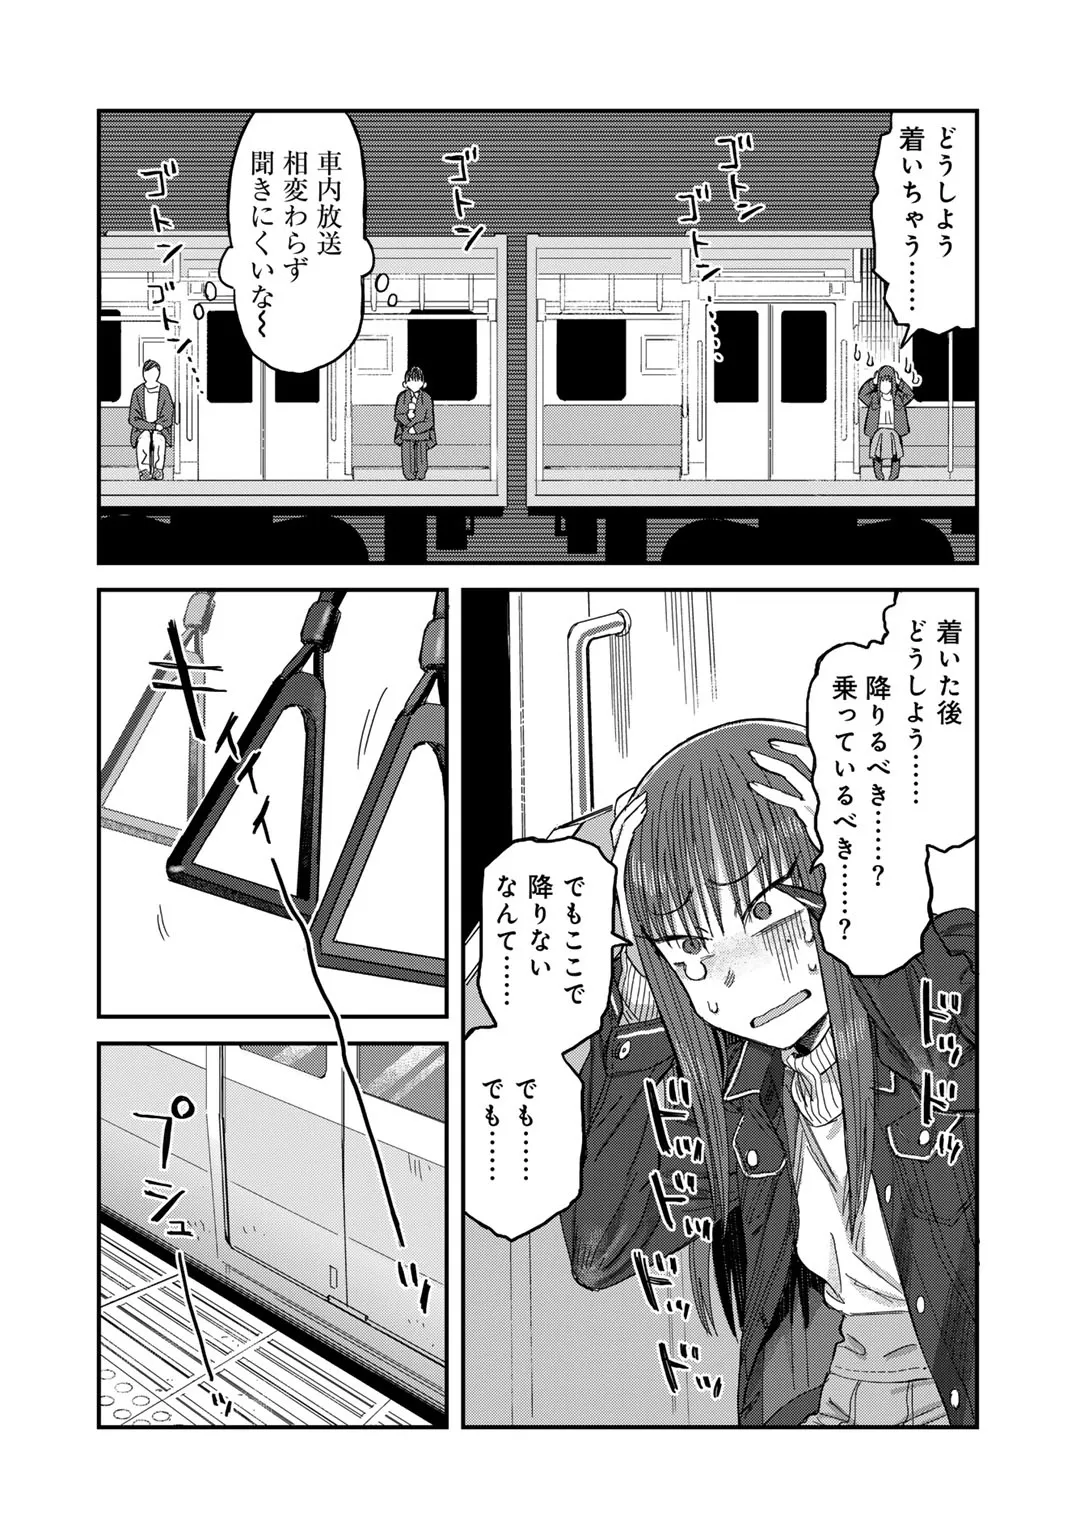 『怖がりがきさらぎ駅に行く話』(15／21)